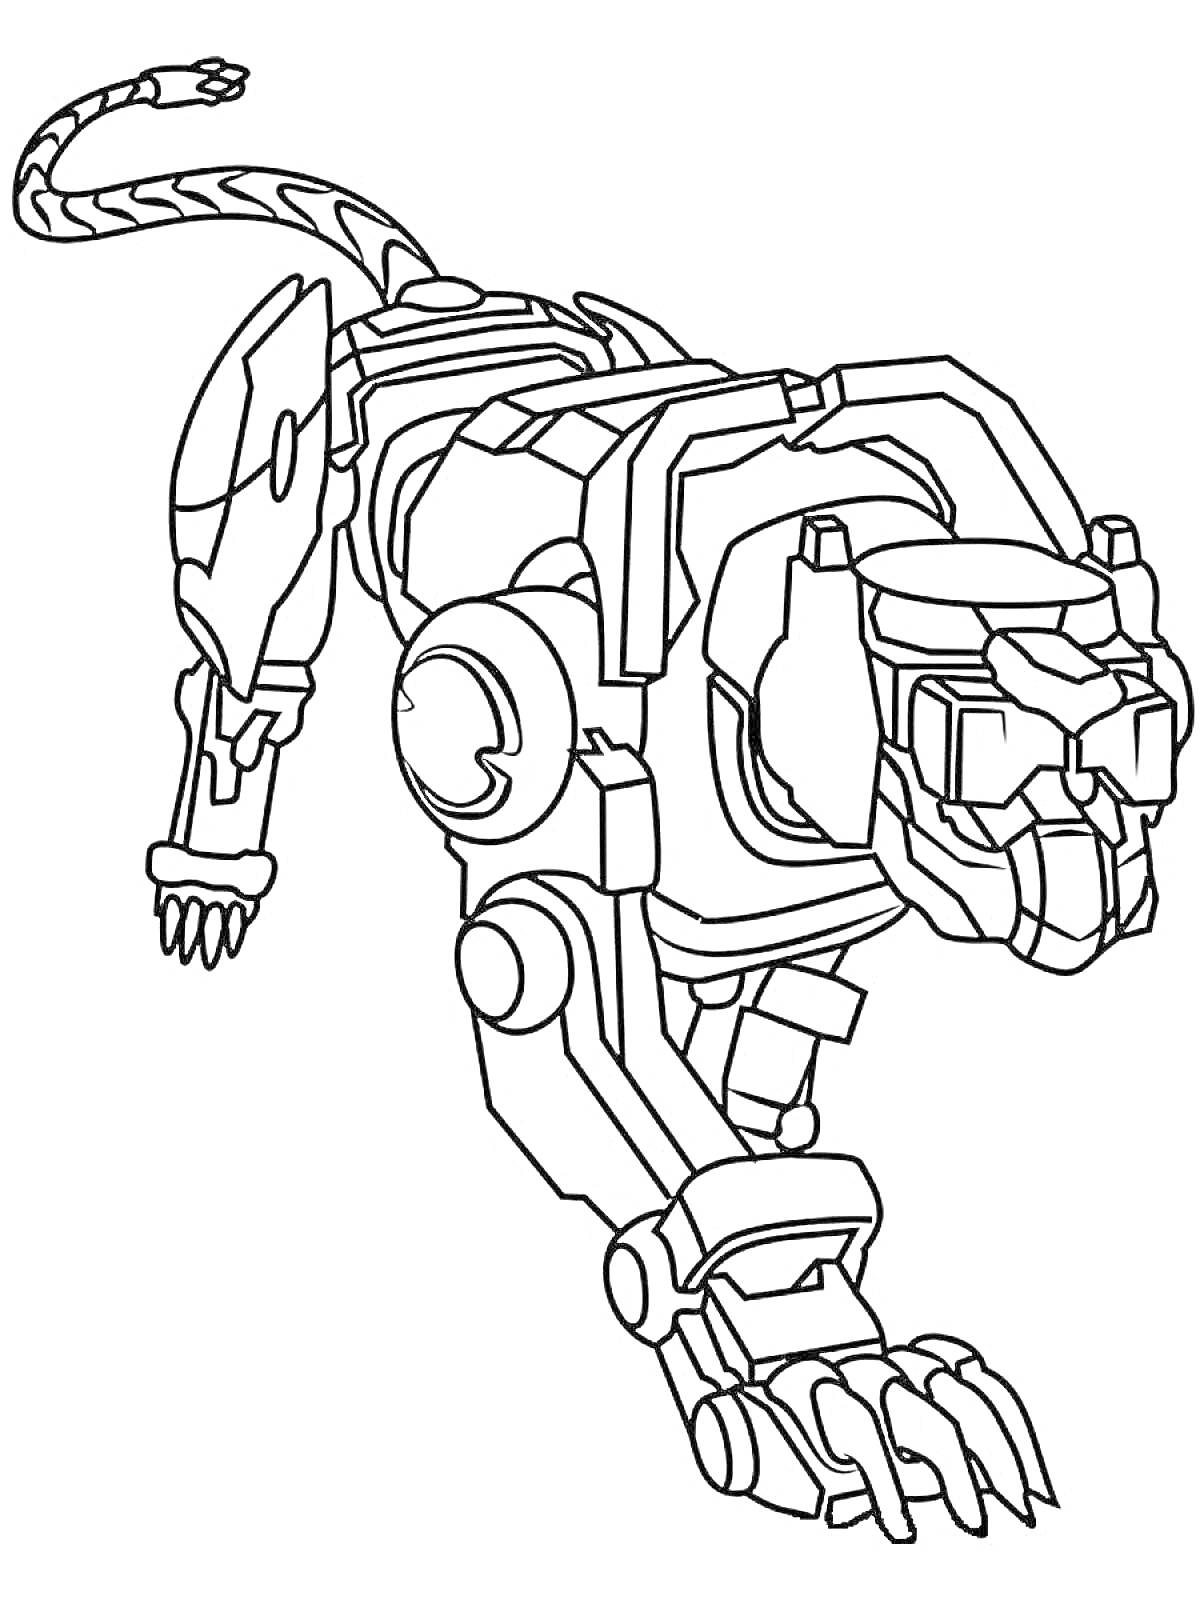 Раскраска Роботизированный тигр в движении, с механическими деталями и хвостом